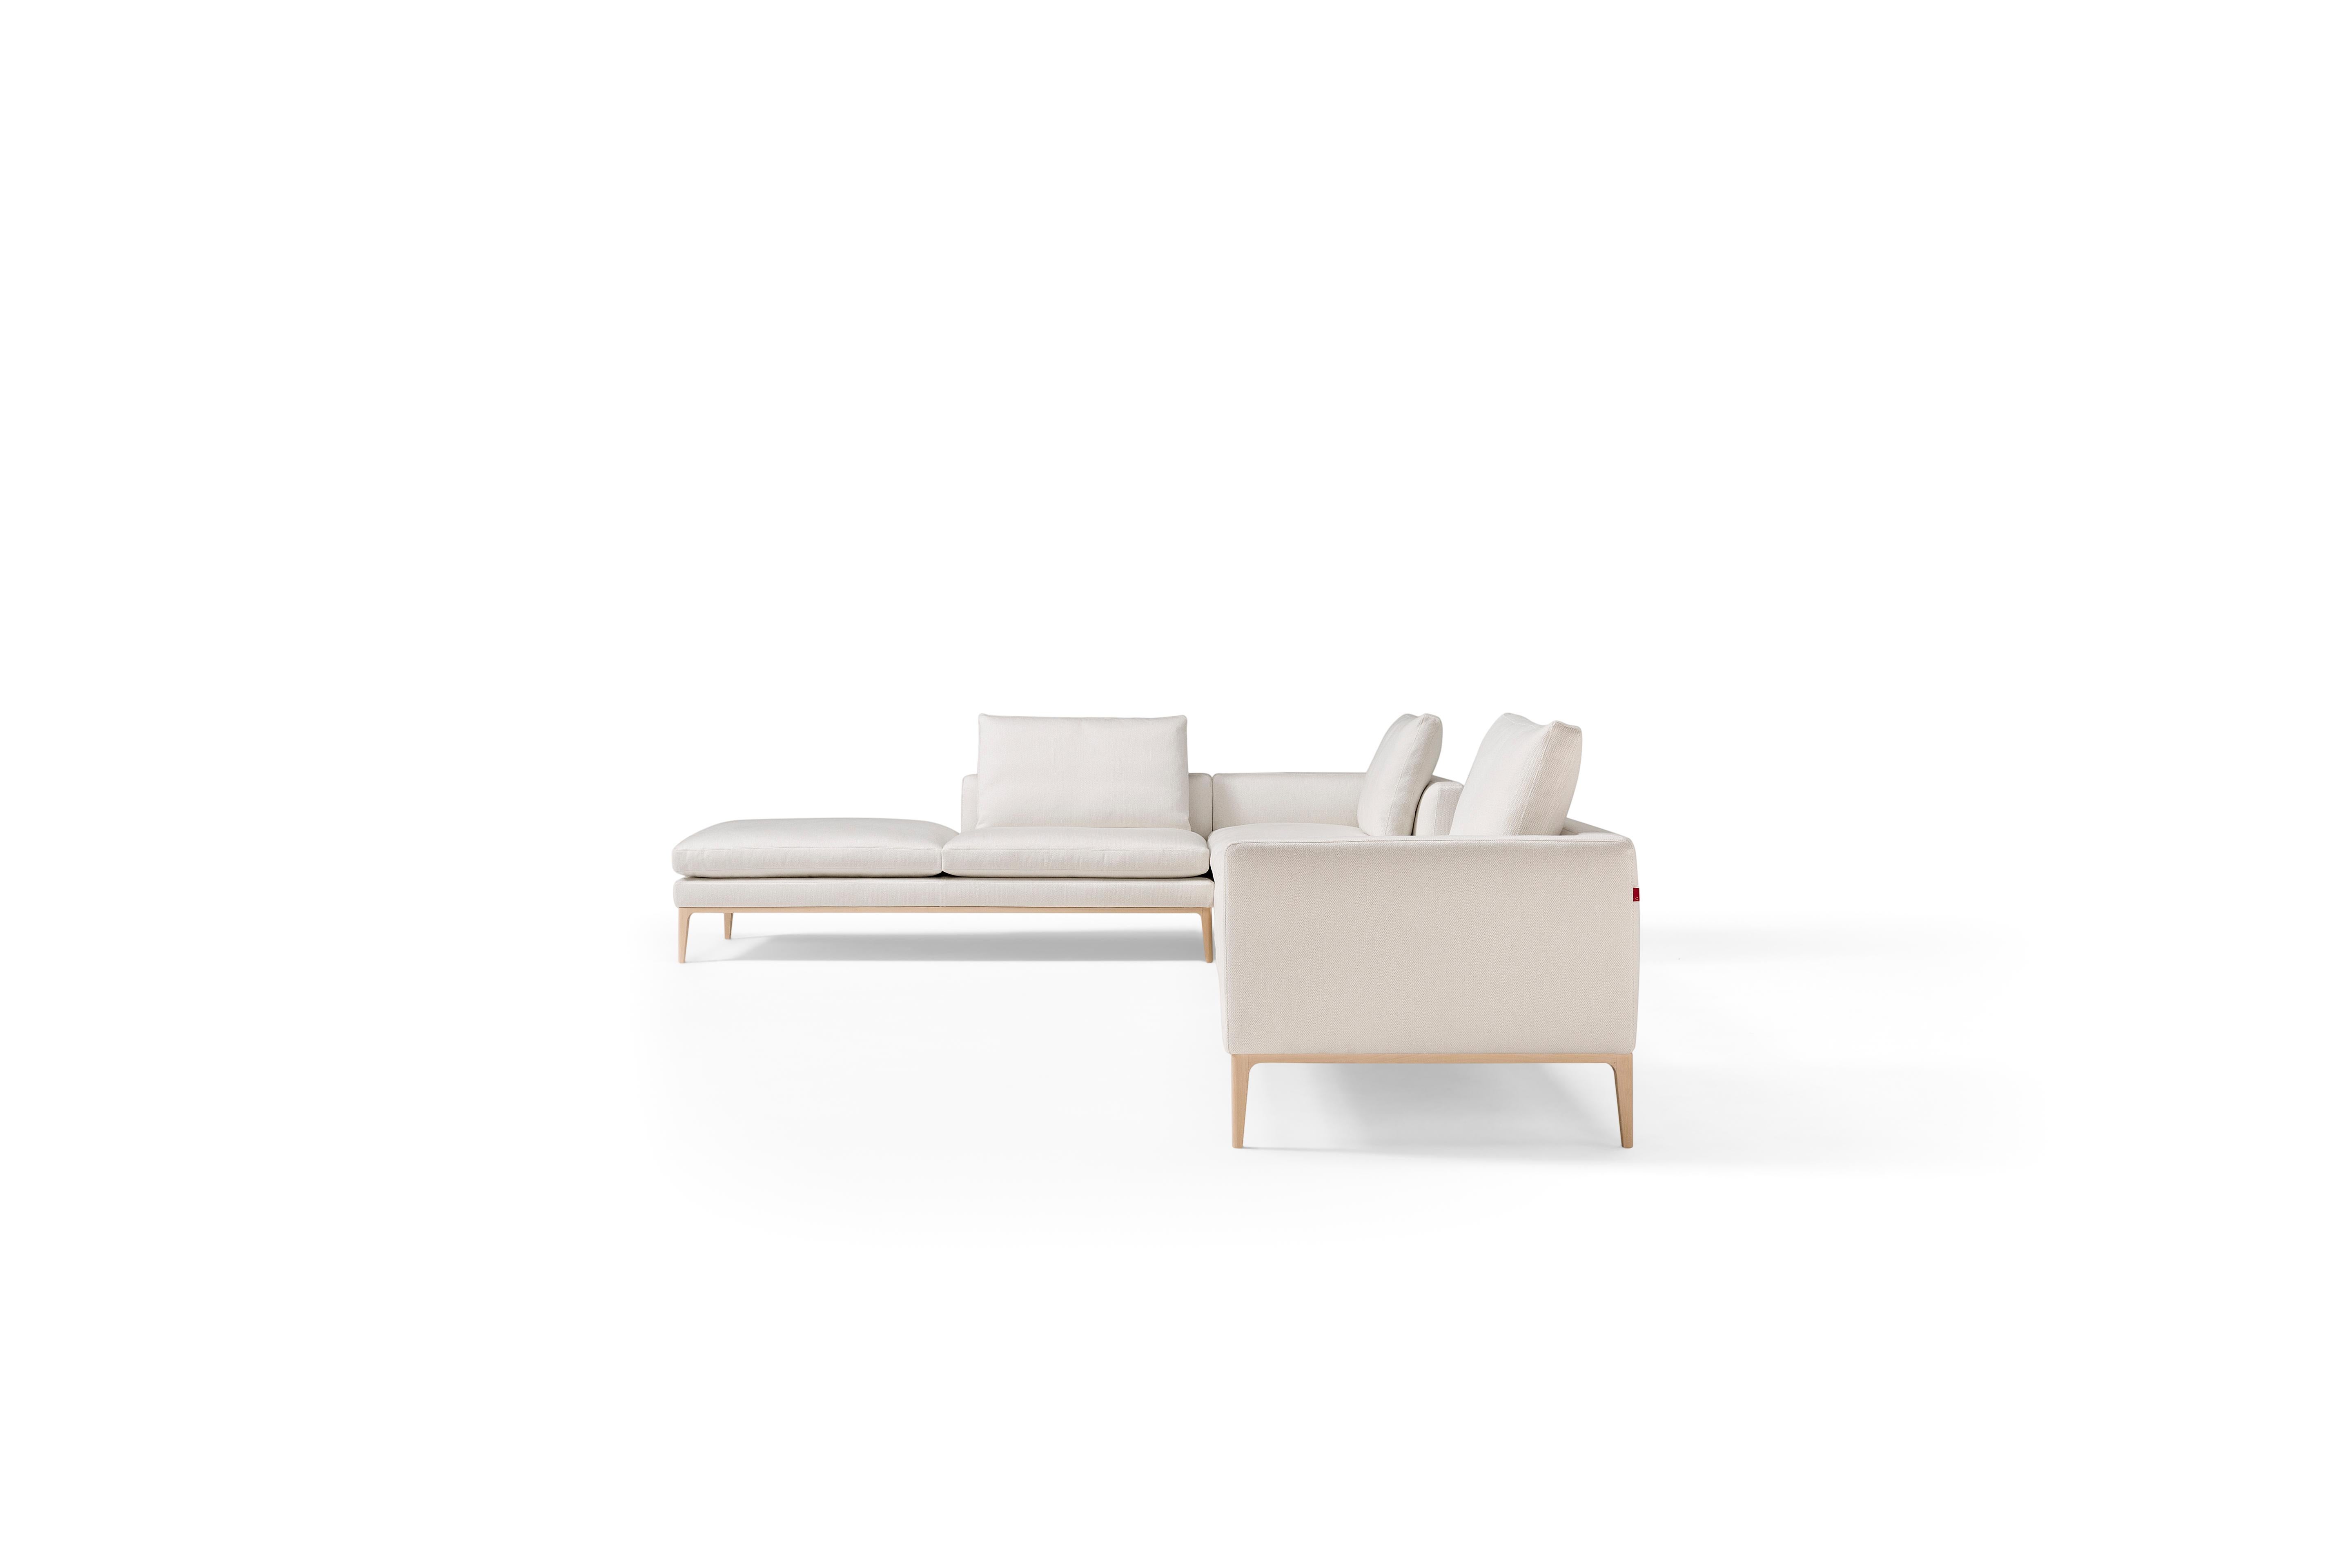 Leonard ist ein Sitzsystem, das durch die Anhäufung von geometrischen Volumen entsteht, die durch eine elegante Silhouette definiert werden. Eine durchgehende Linie zeichnet die Umrisse von Sitzen, Rückenlehnen und Armlehnen, in die weiche und